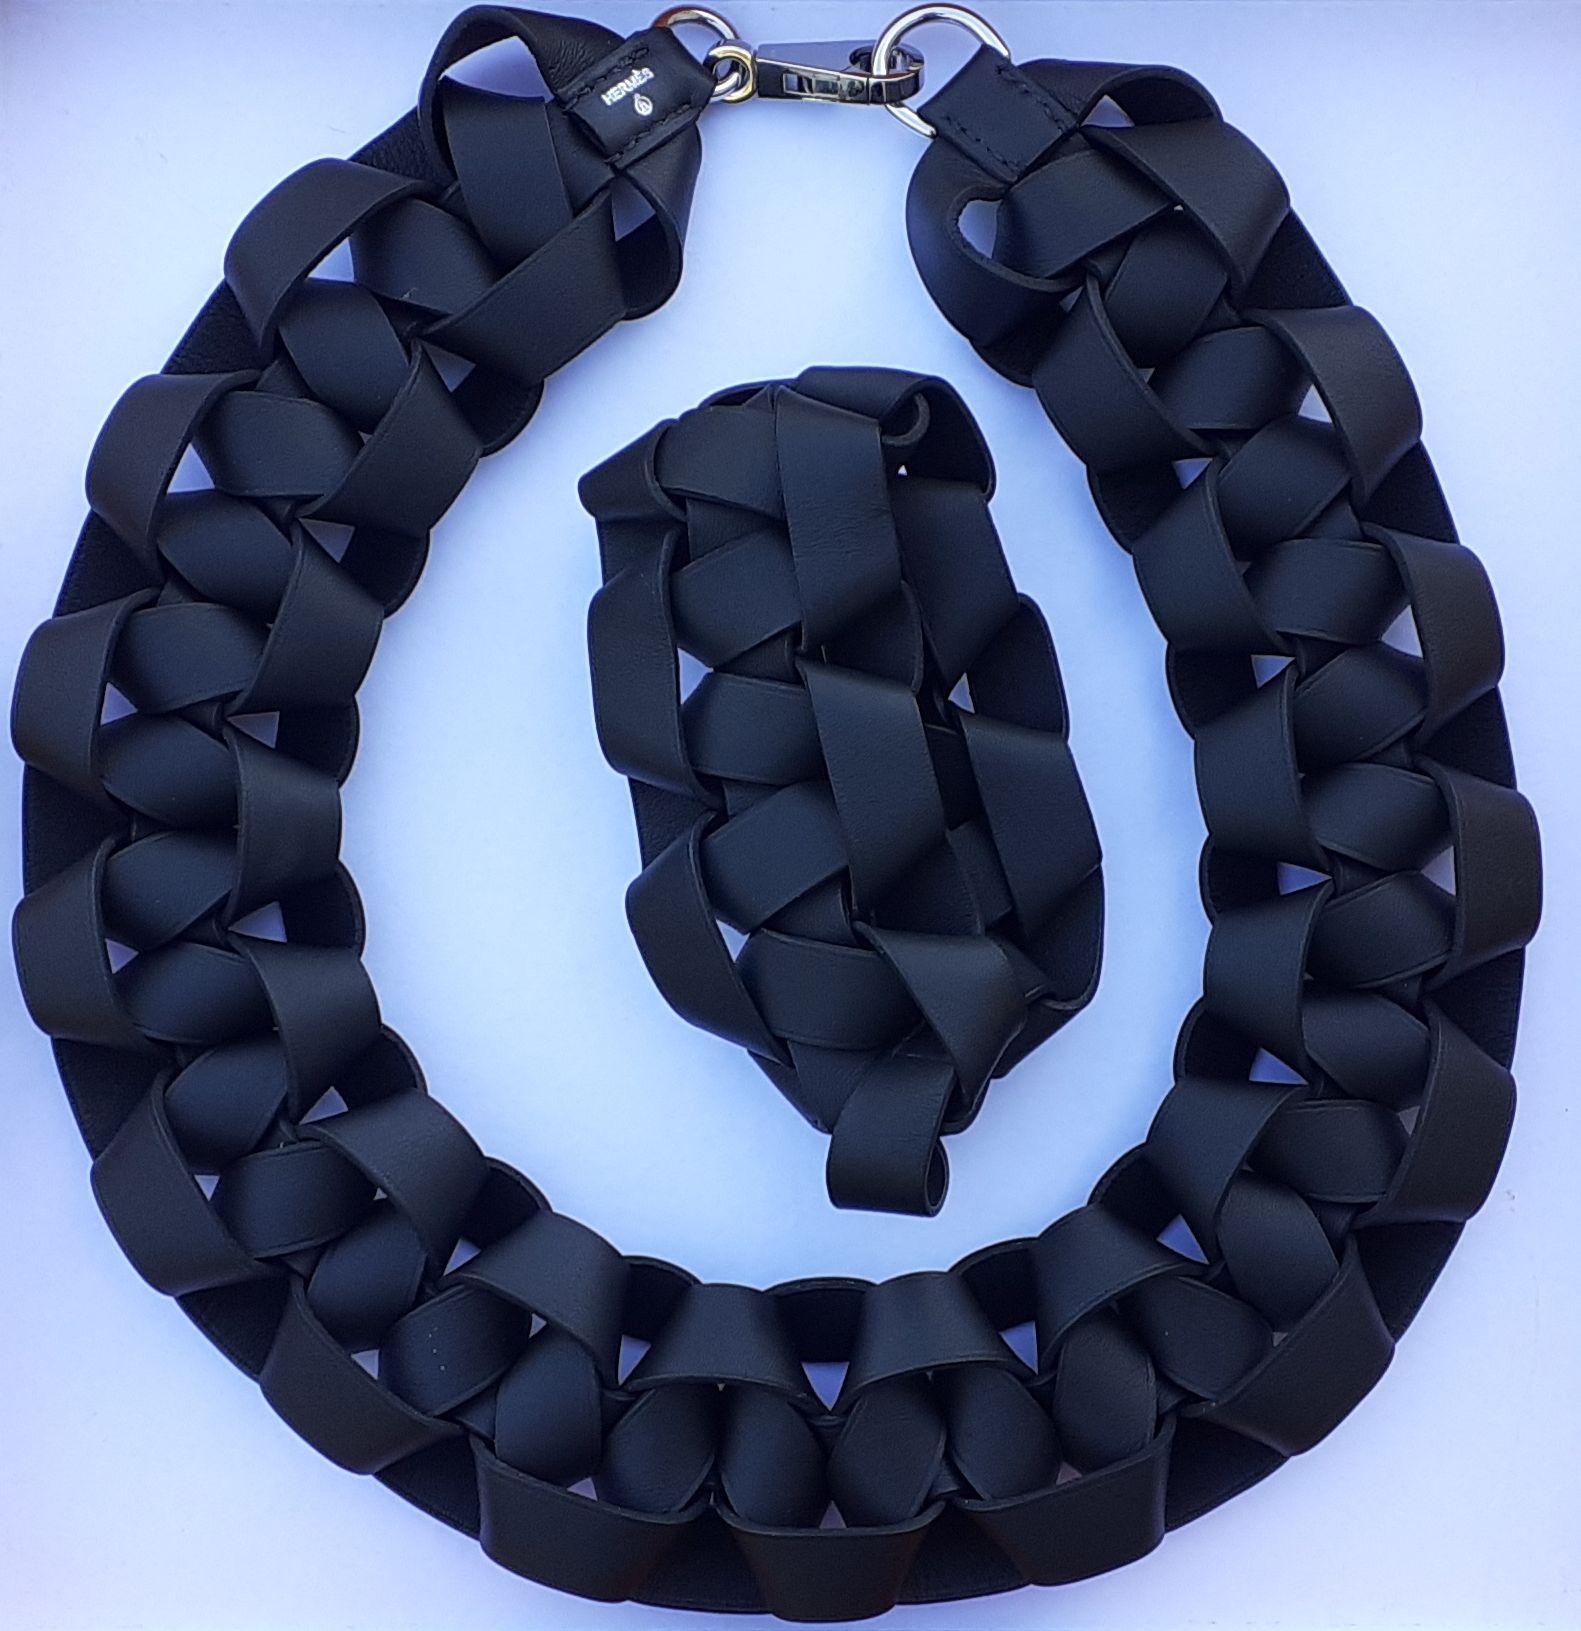 Seltenes und schönes authentisches Hermès-Set

Enthält 1 Halskette und 1 passendes Armband

Muster: raffiniert geflochten

Aus Glattleder und Schließe aus palladiumplattierter Hardware

Farbvarianten: Schwarz, Silber

Das Armband lässt sich nicht